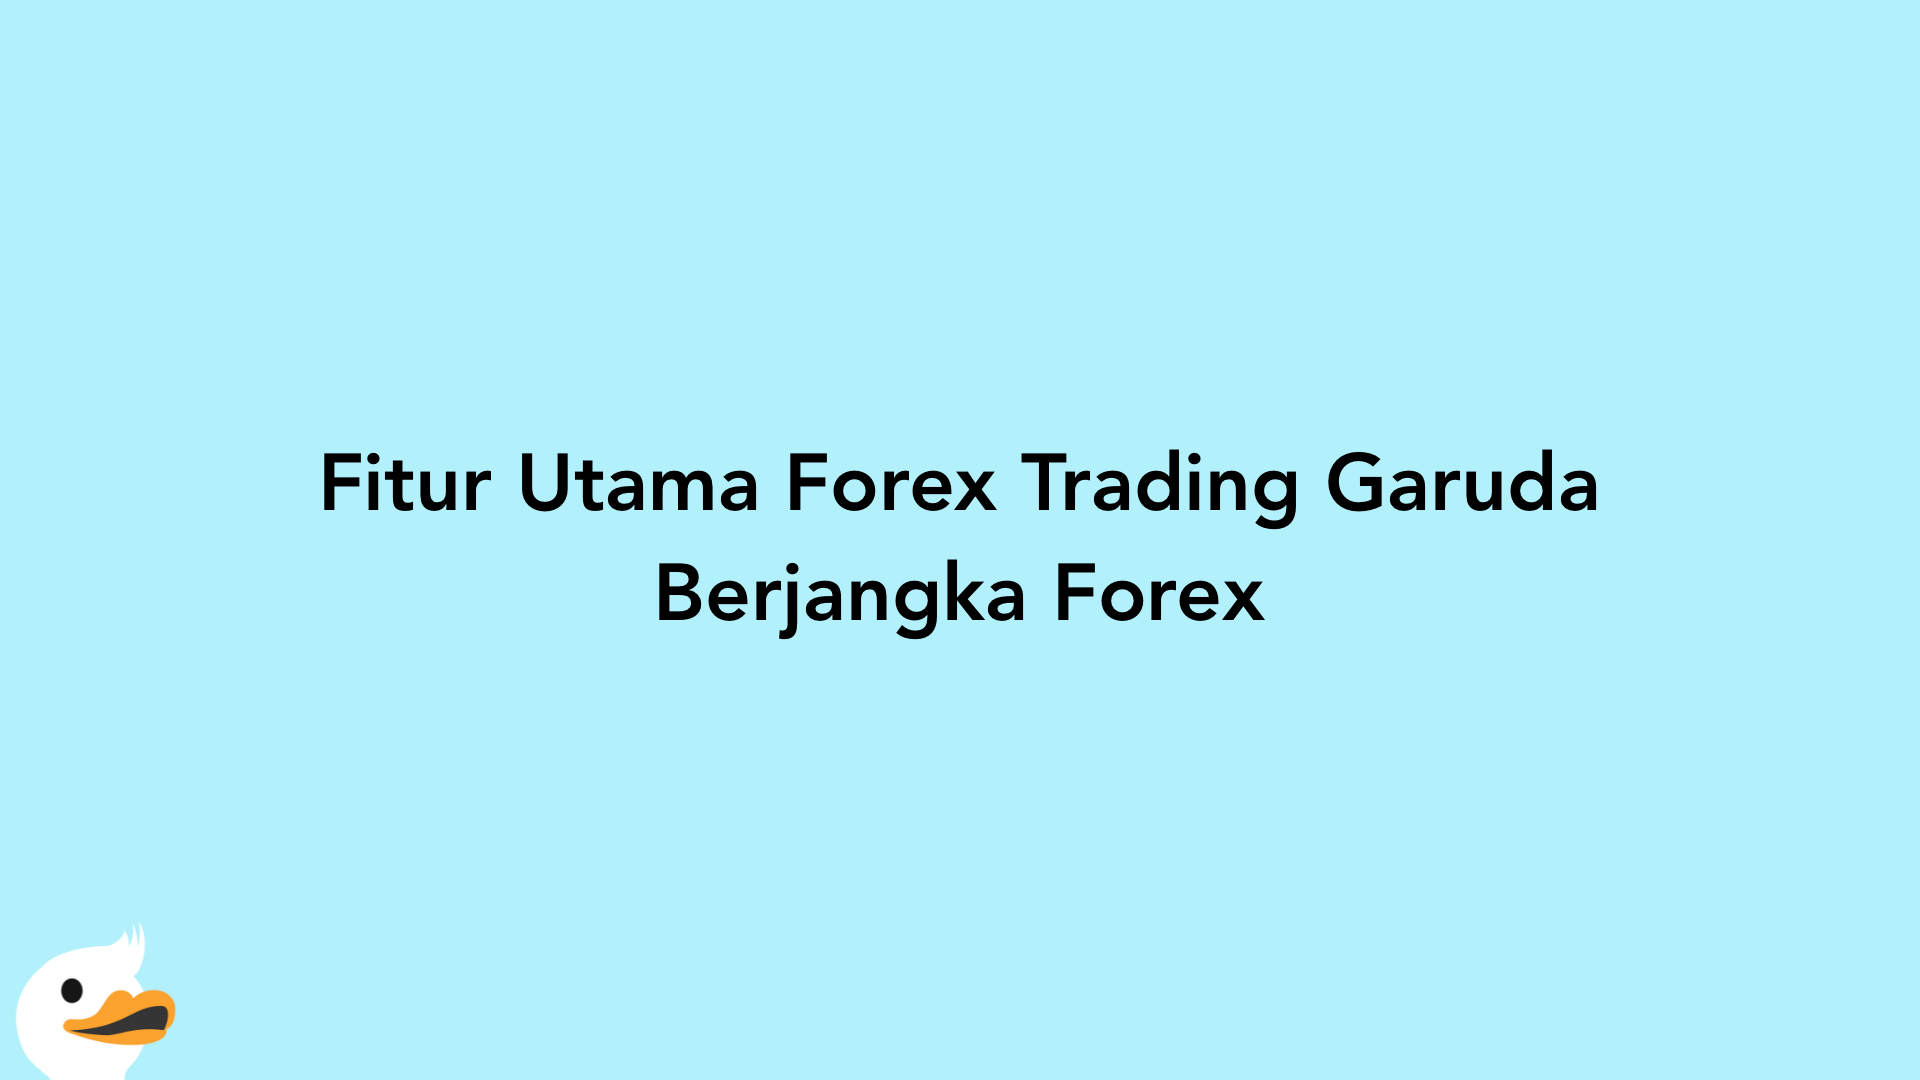 Fitur Utama Forex Trading Garuda Berjangka Forex